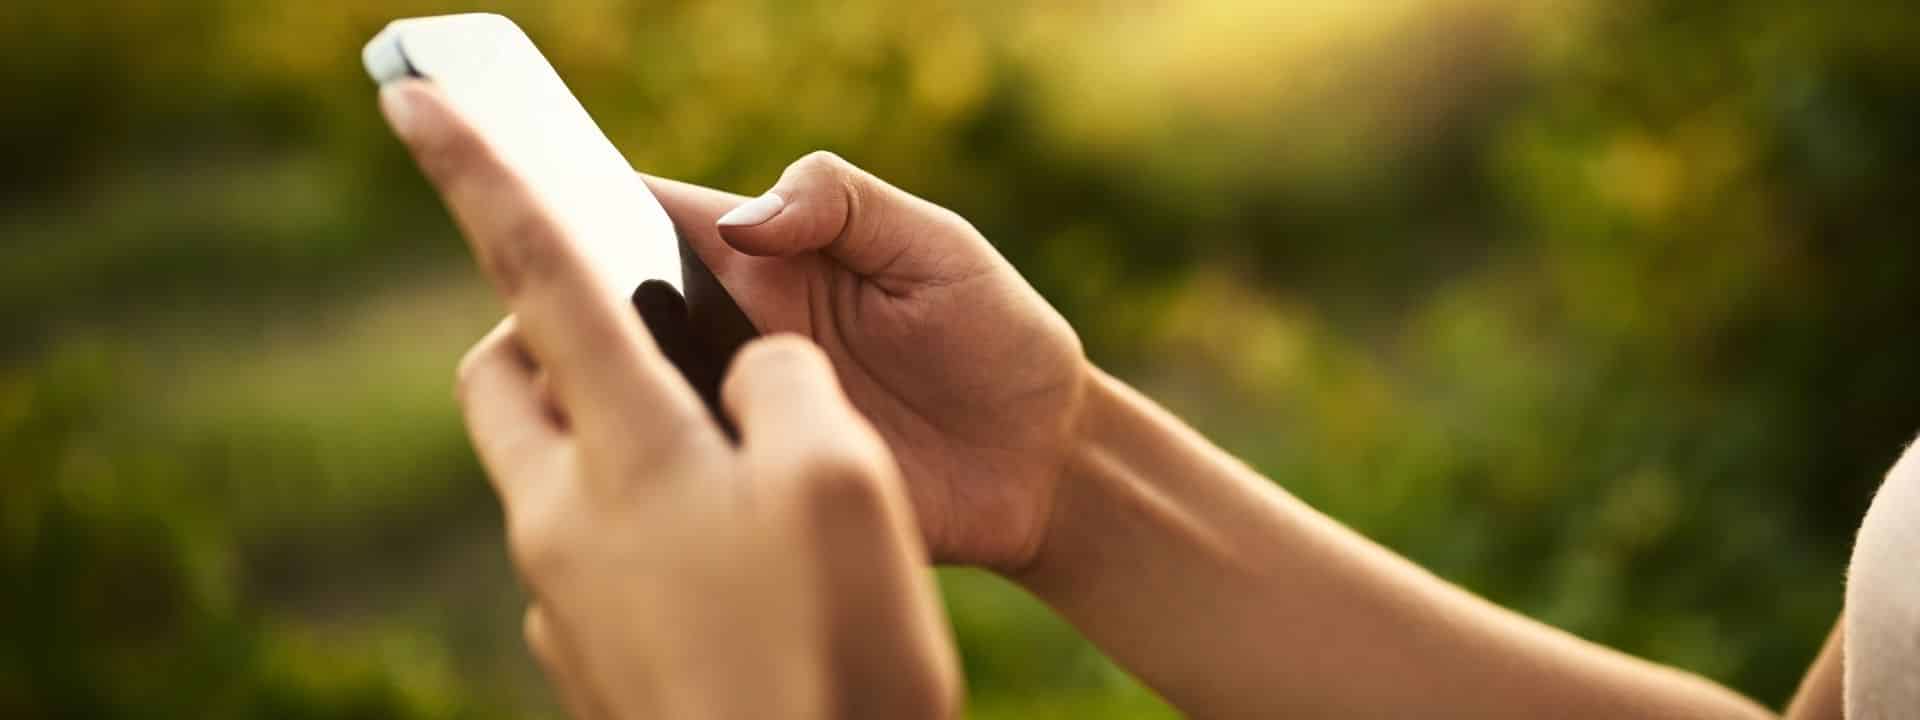 Frau hält Smartphone in der Hand und tippt etwas